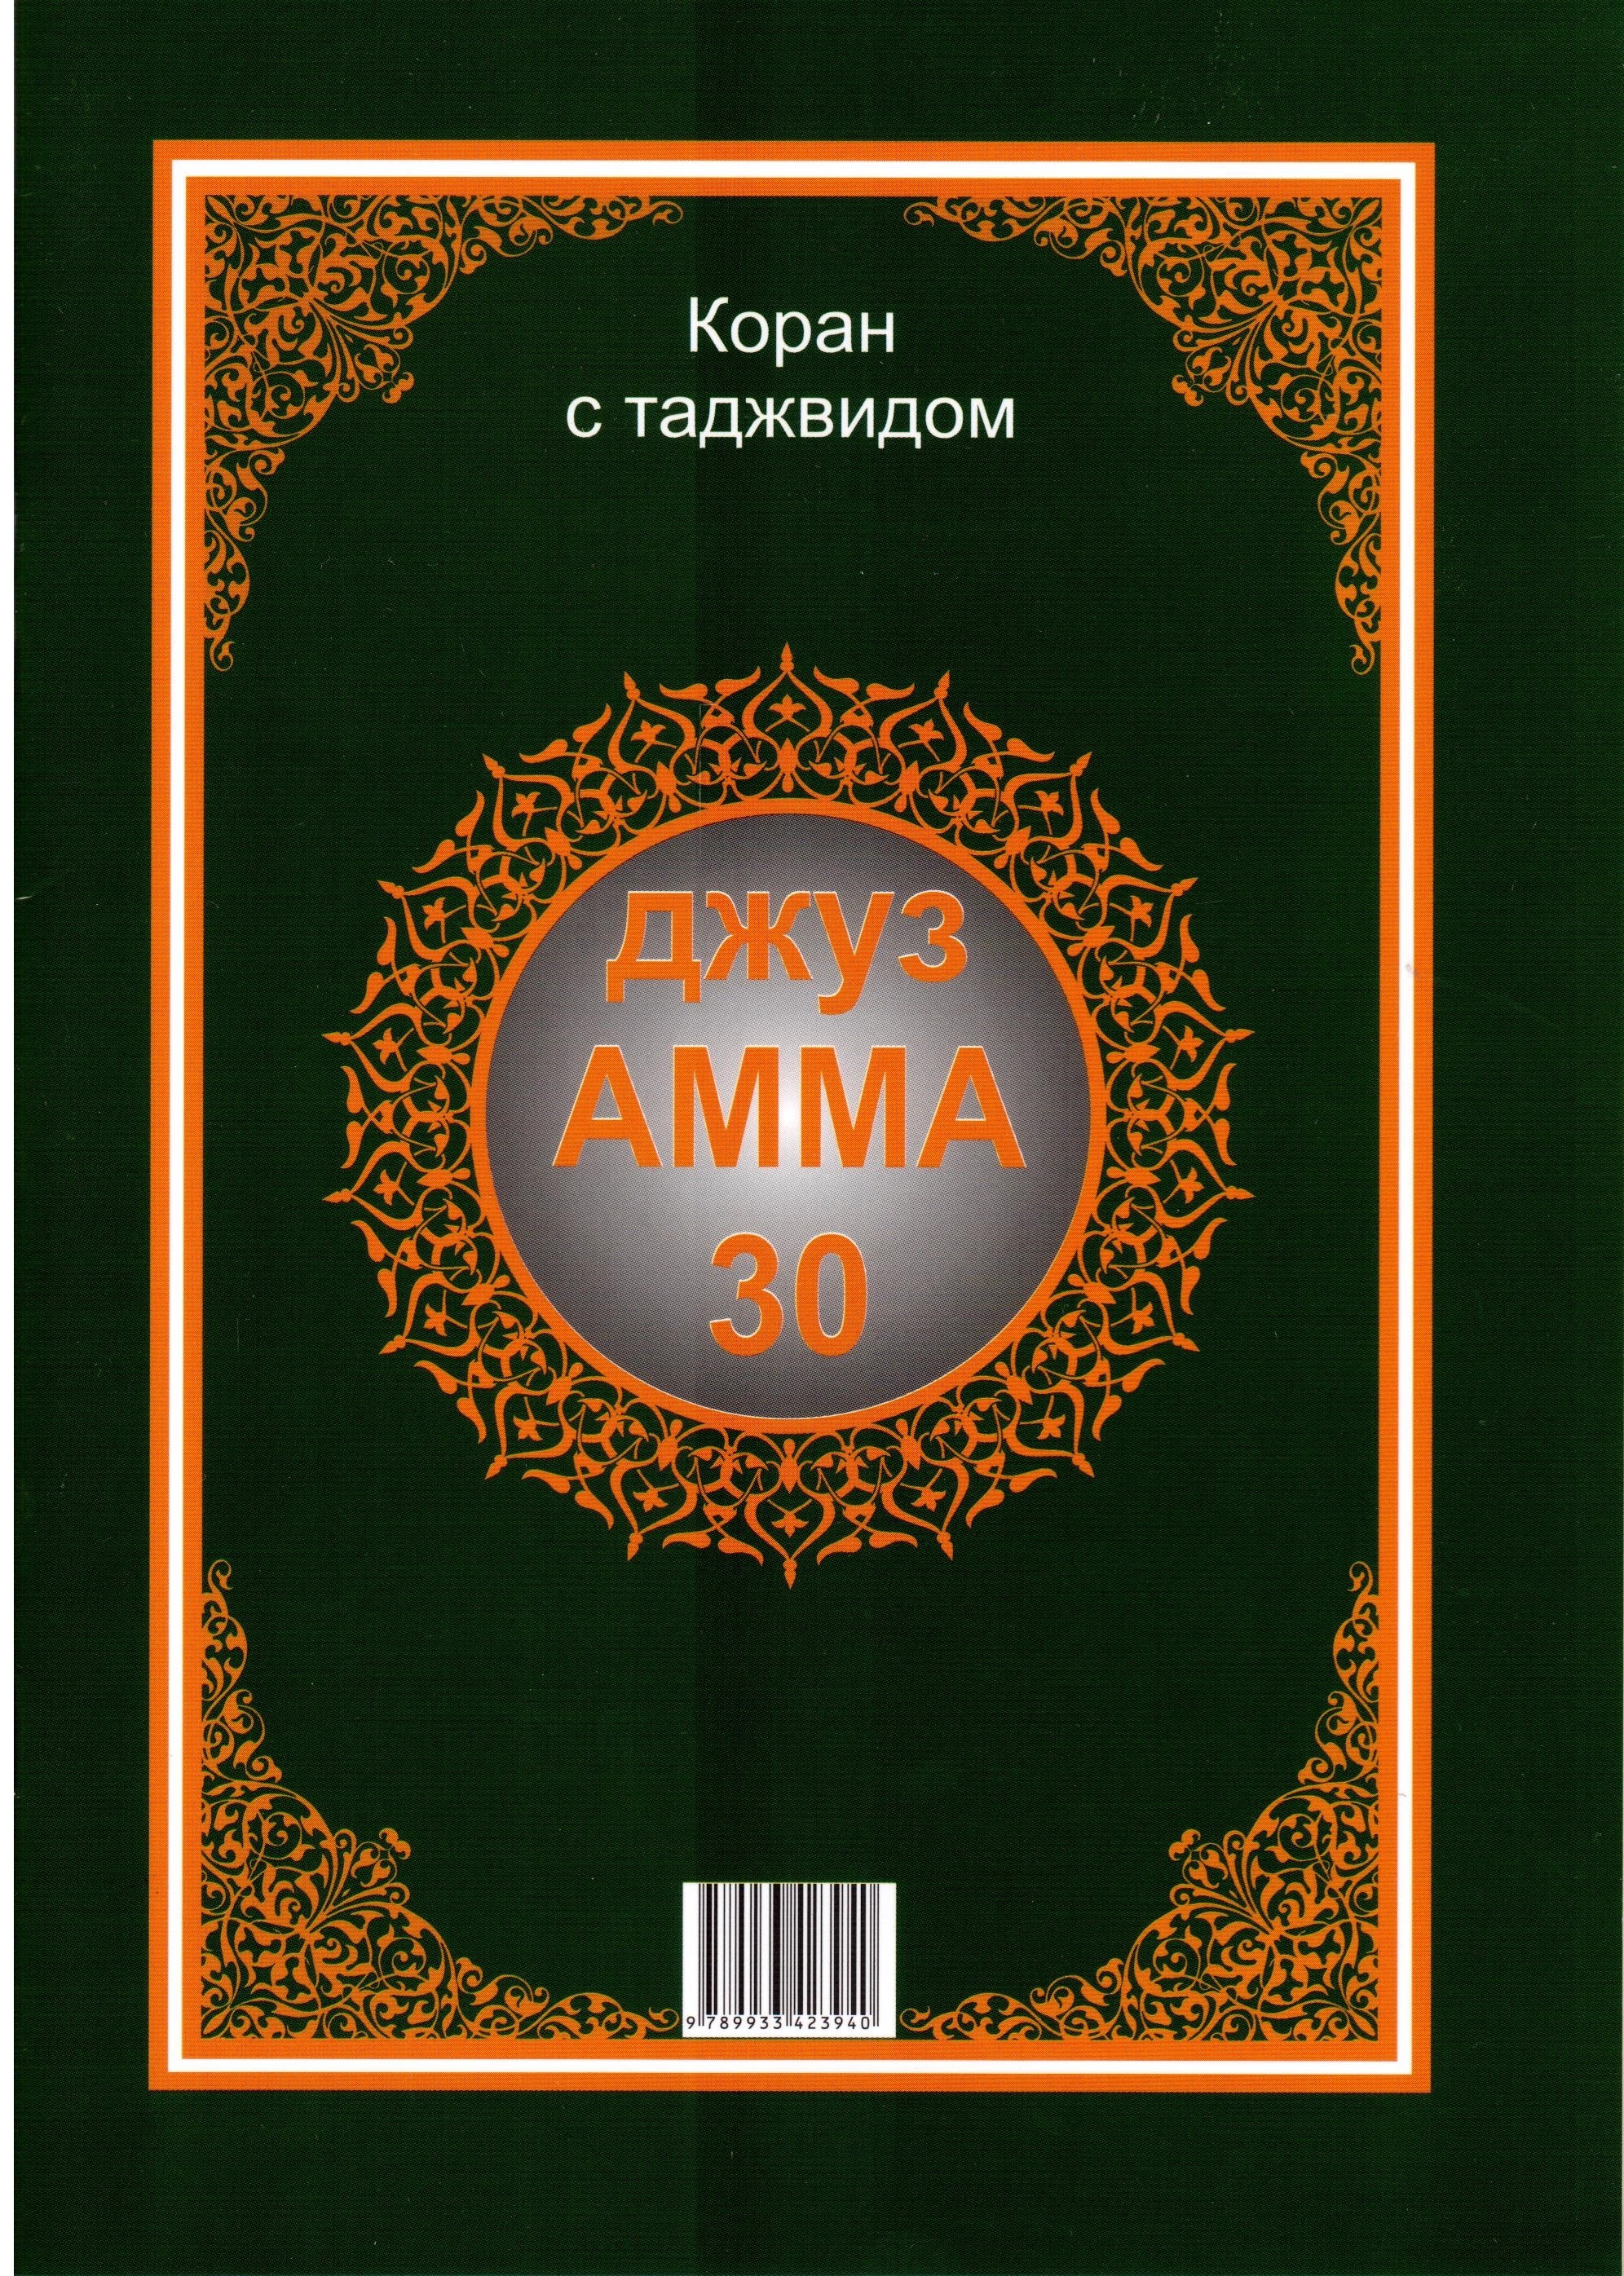 Коран на татарском языке скачать книгу